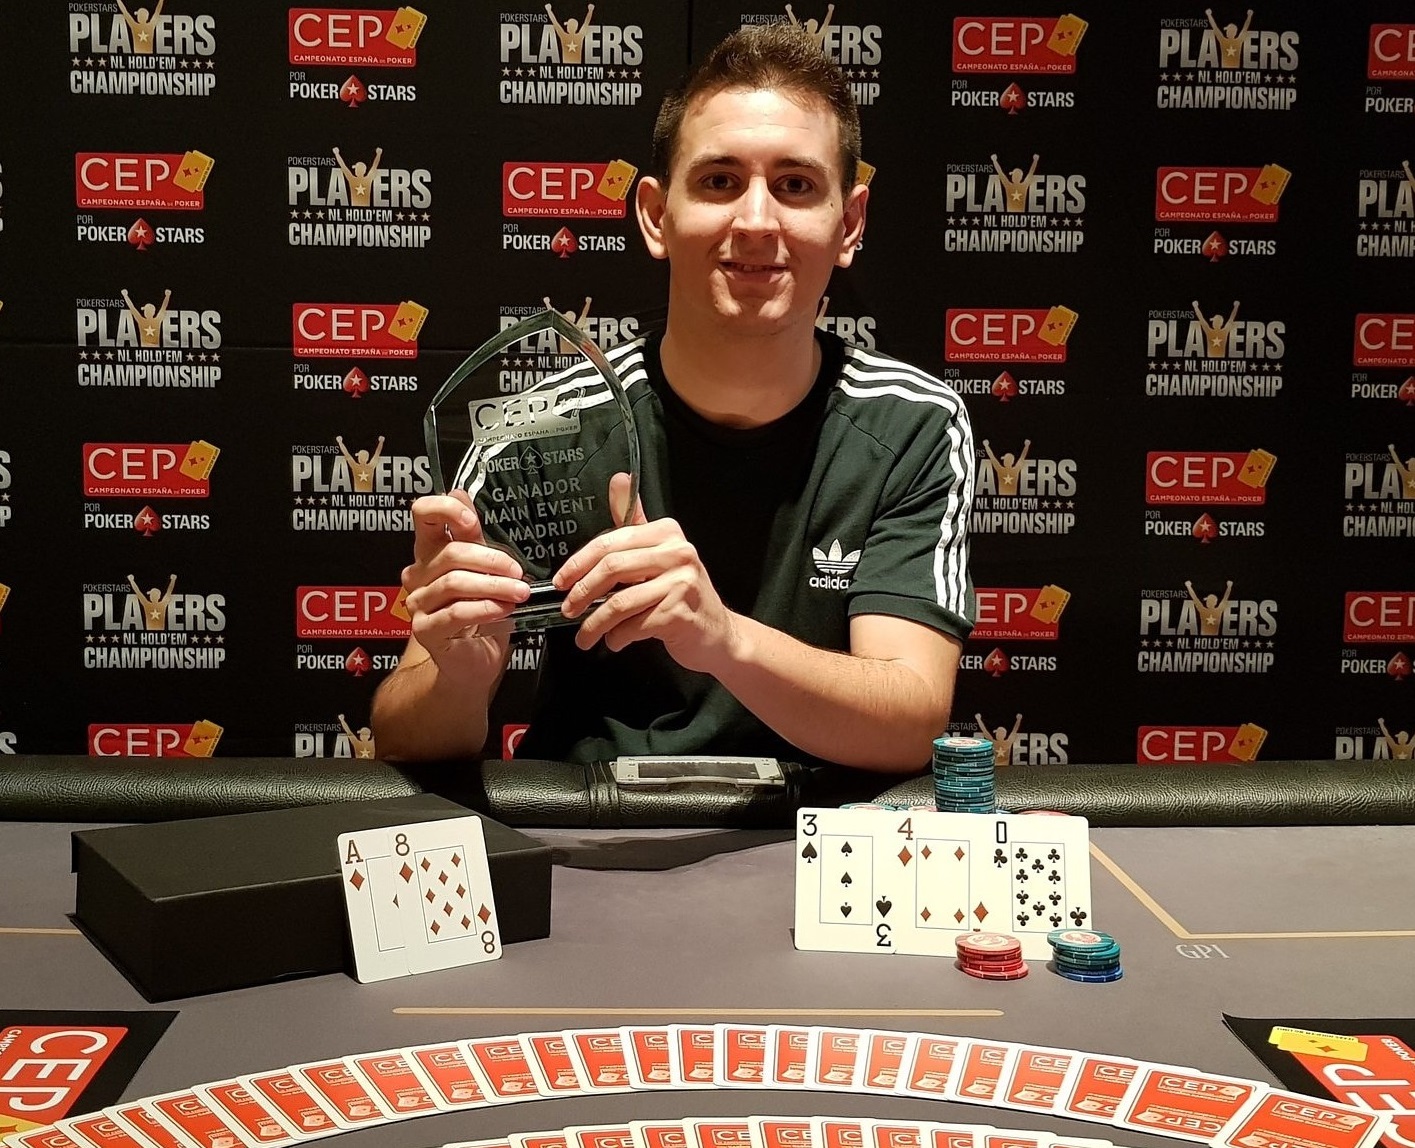 David Sierra campeón del CEP por PokerStars Madrid 2018